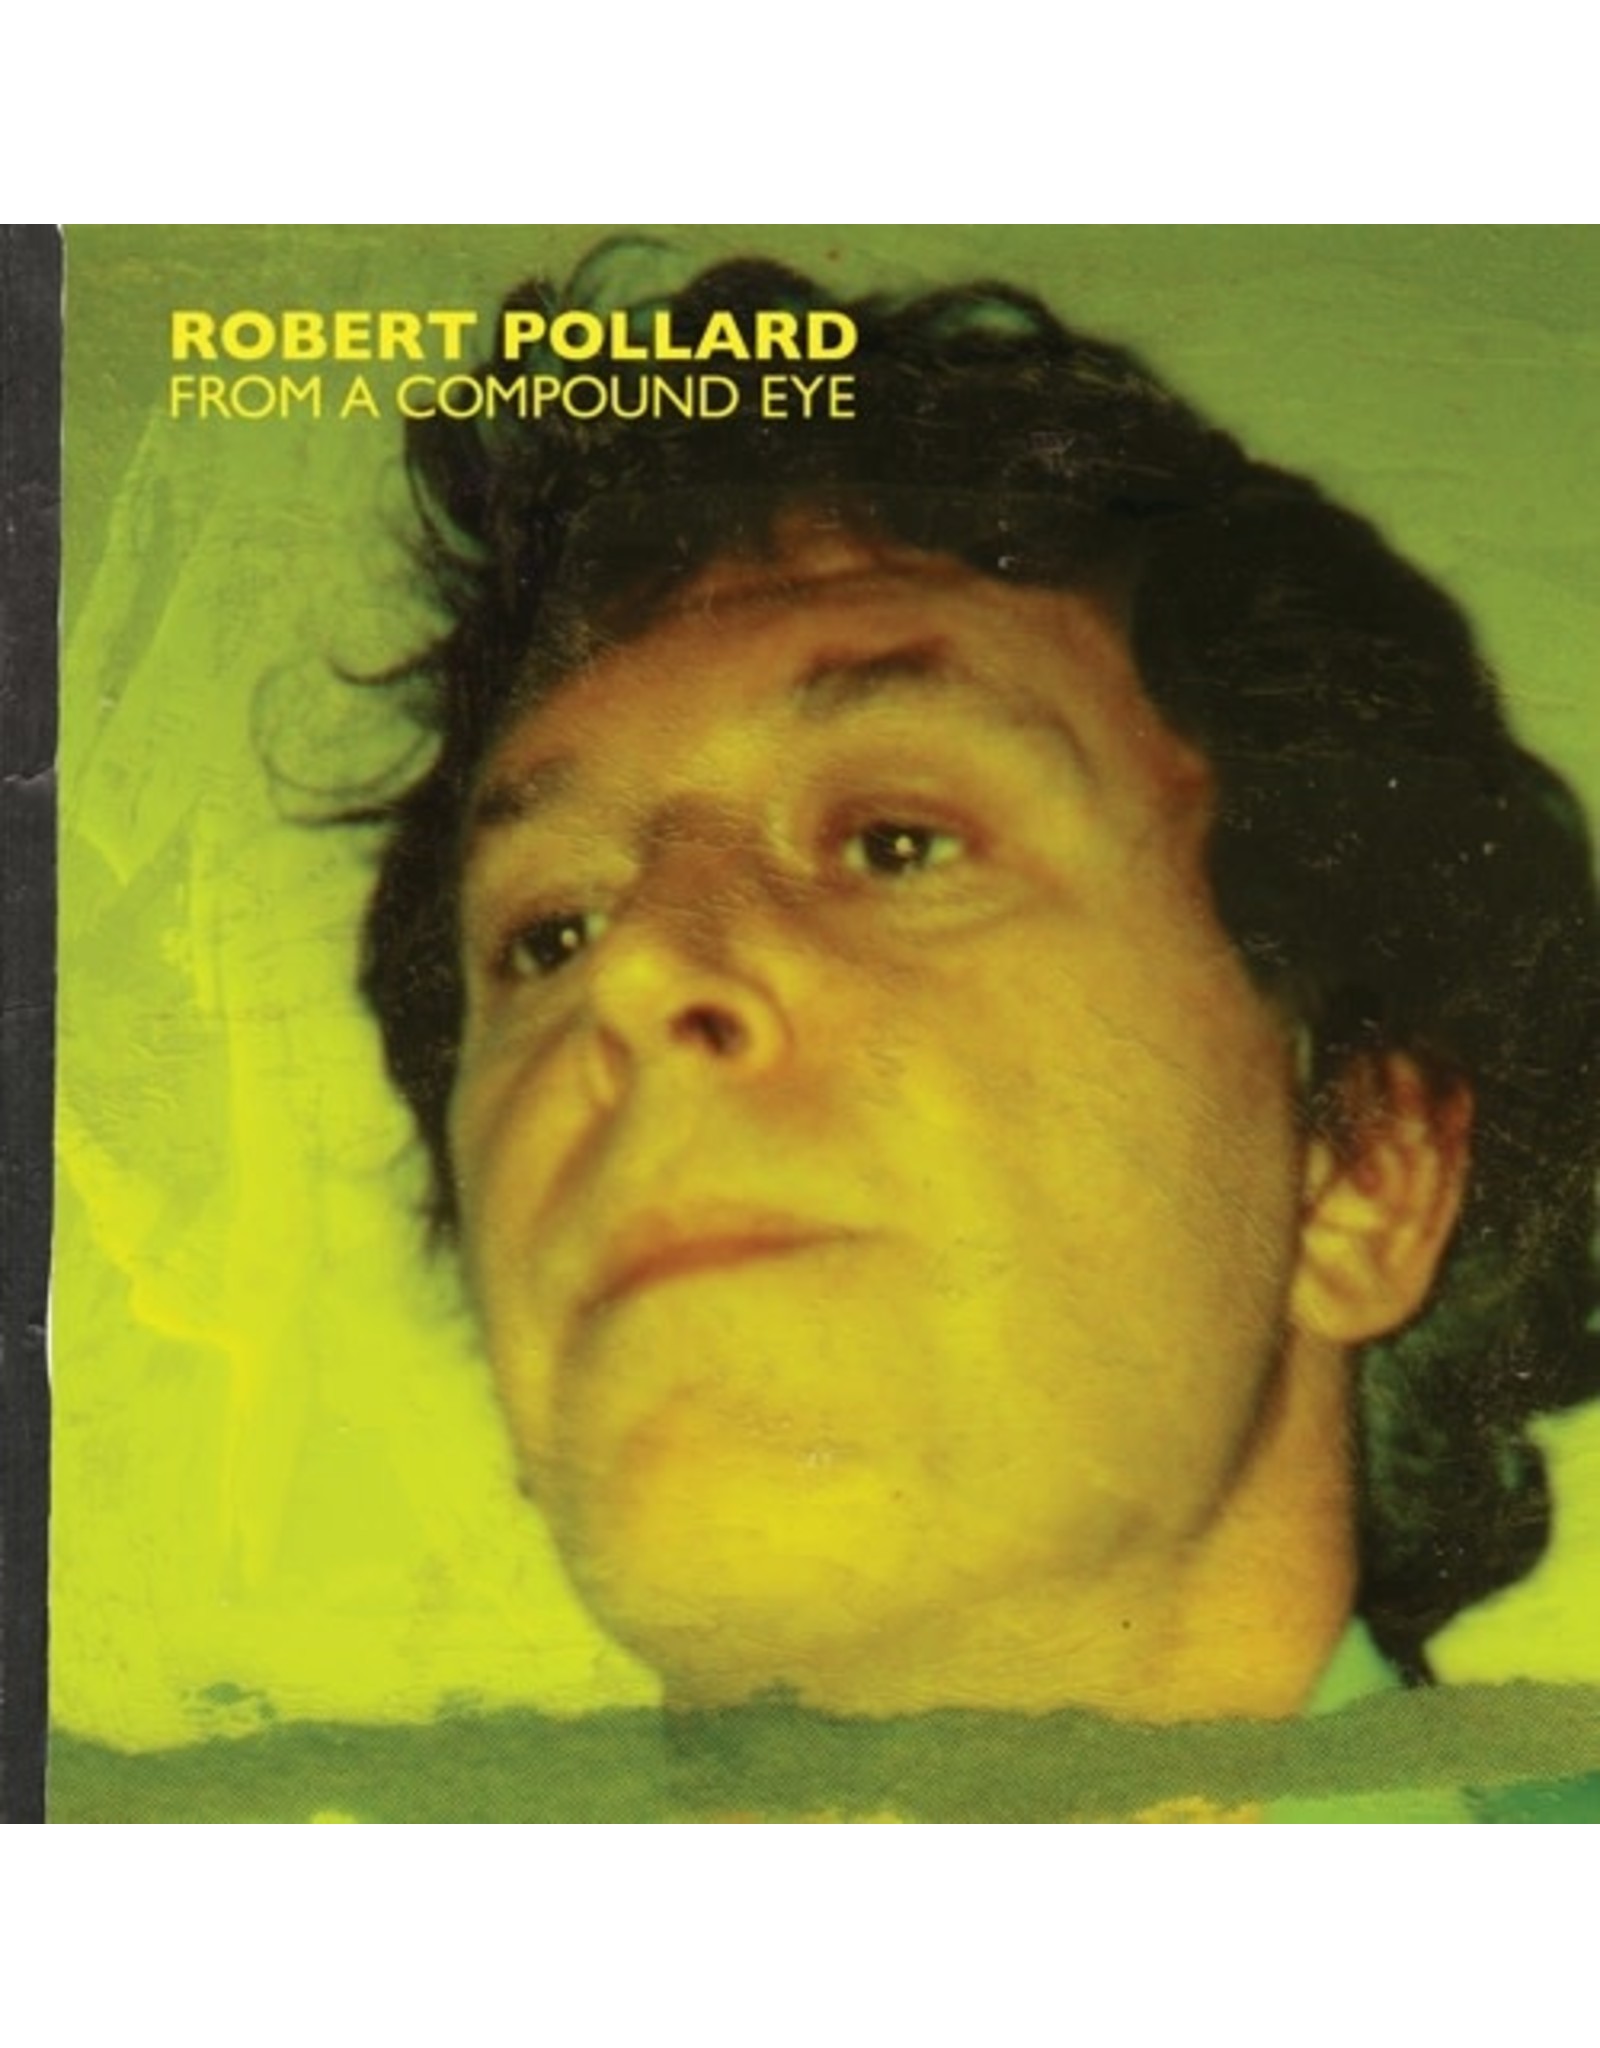 New Vinyl Robert Pollard - From A Compound Eye 2LP